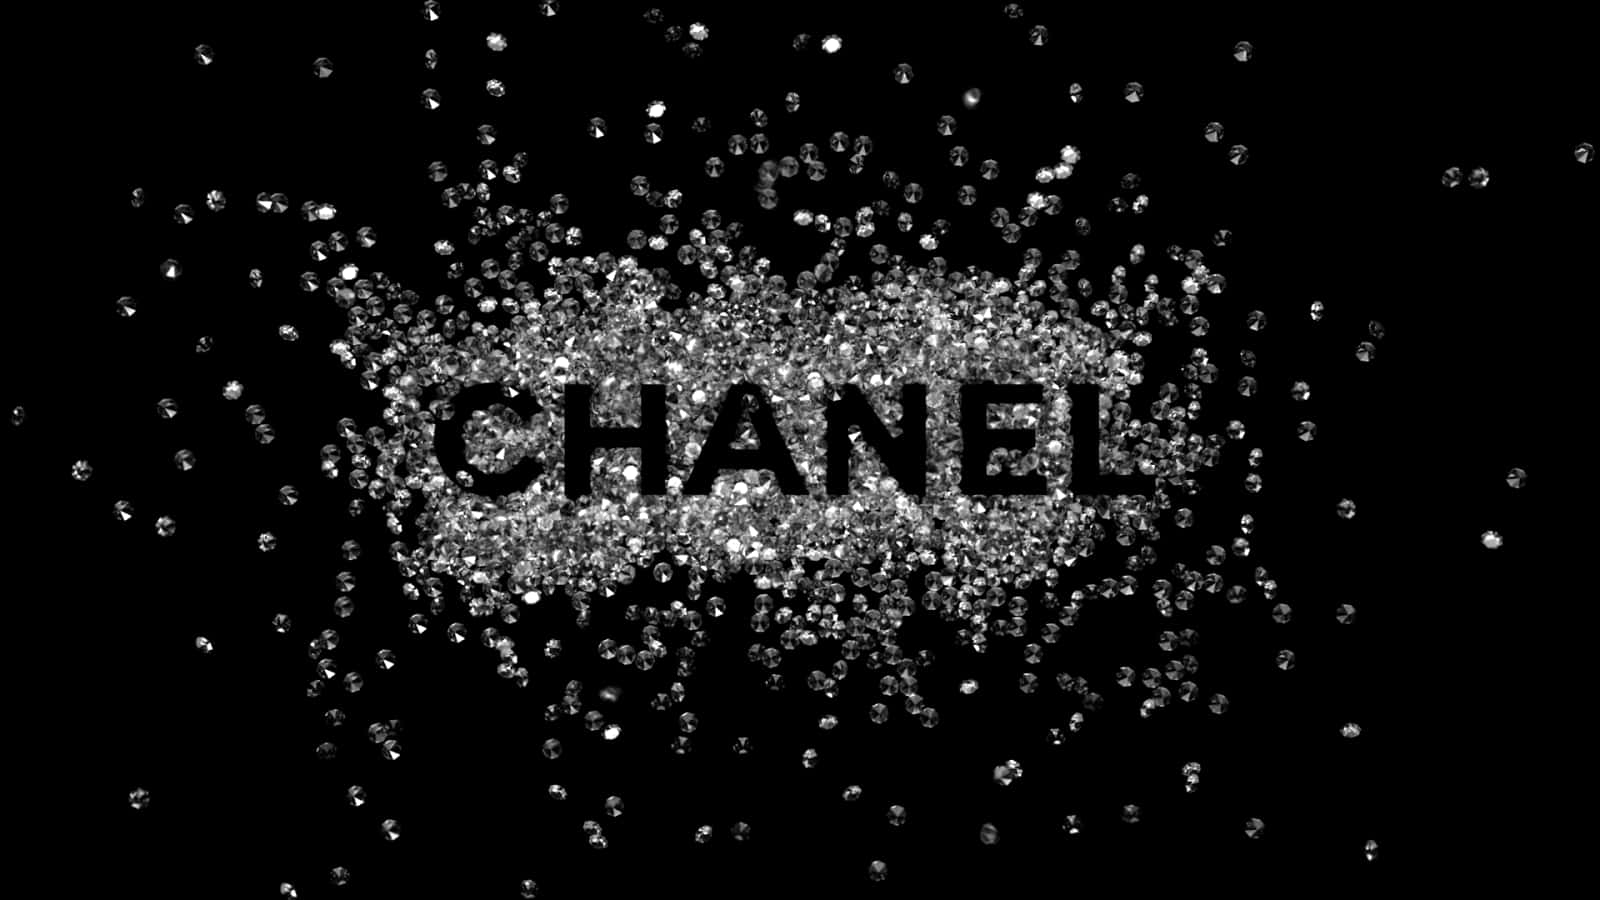 Denlyxiga Och Ikoniska Logotypen Från Chanel Ger Elegans Till Vilken Bakgrund Som Helst.